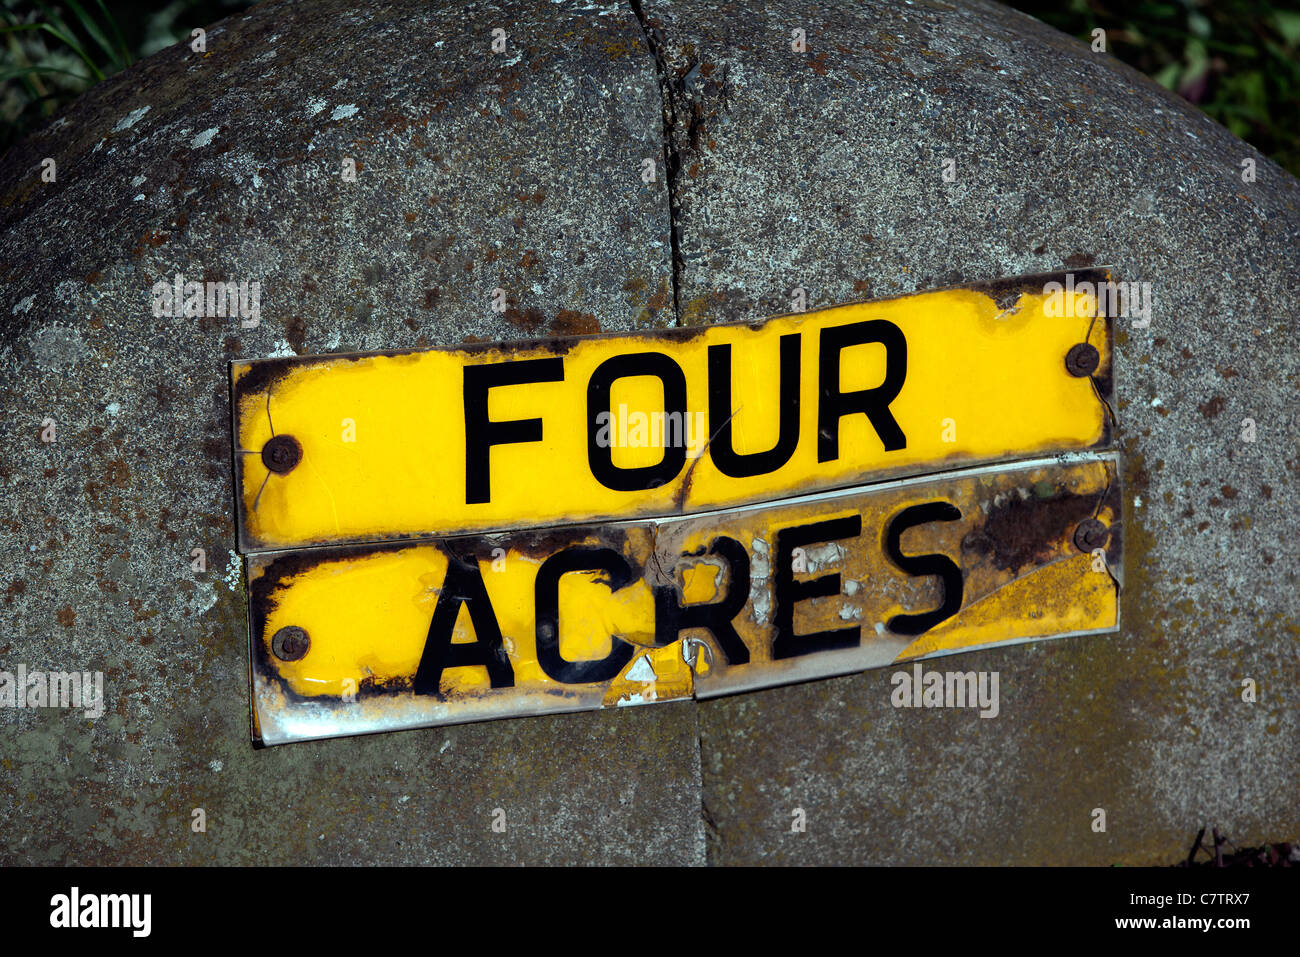 Four Acres Farm sign, Norton, Stockton on Tees, England, UK, Europe Stock Photo